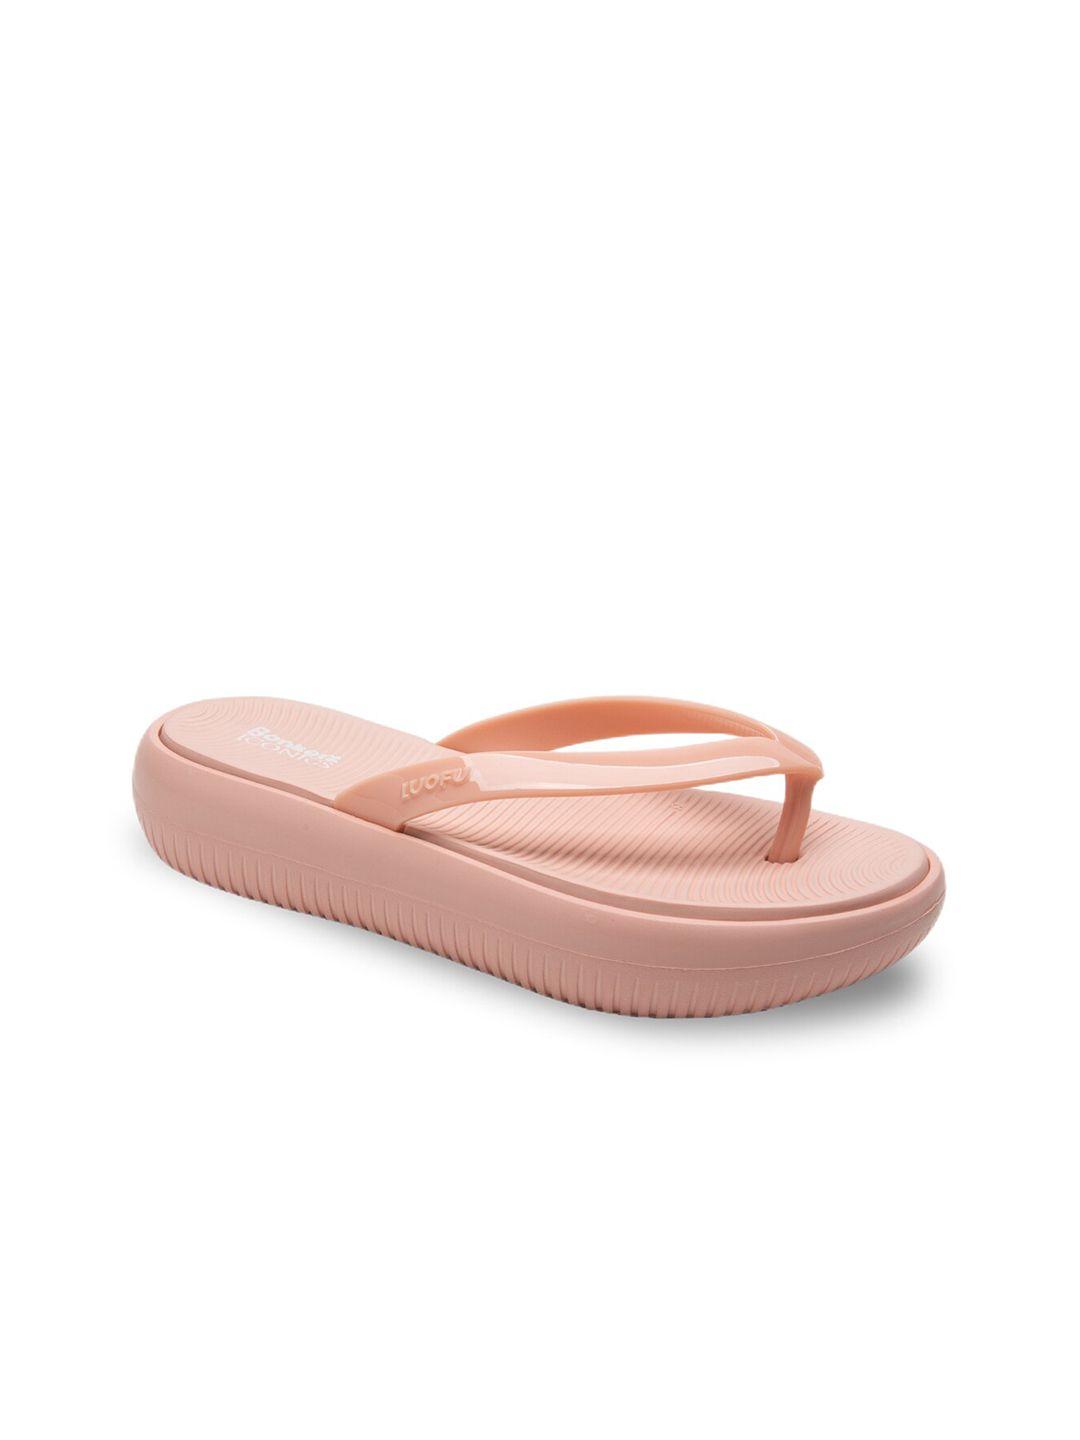 bonkerz-women-peach-coloured-croslite-thong-flip-flops